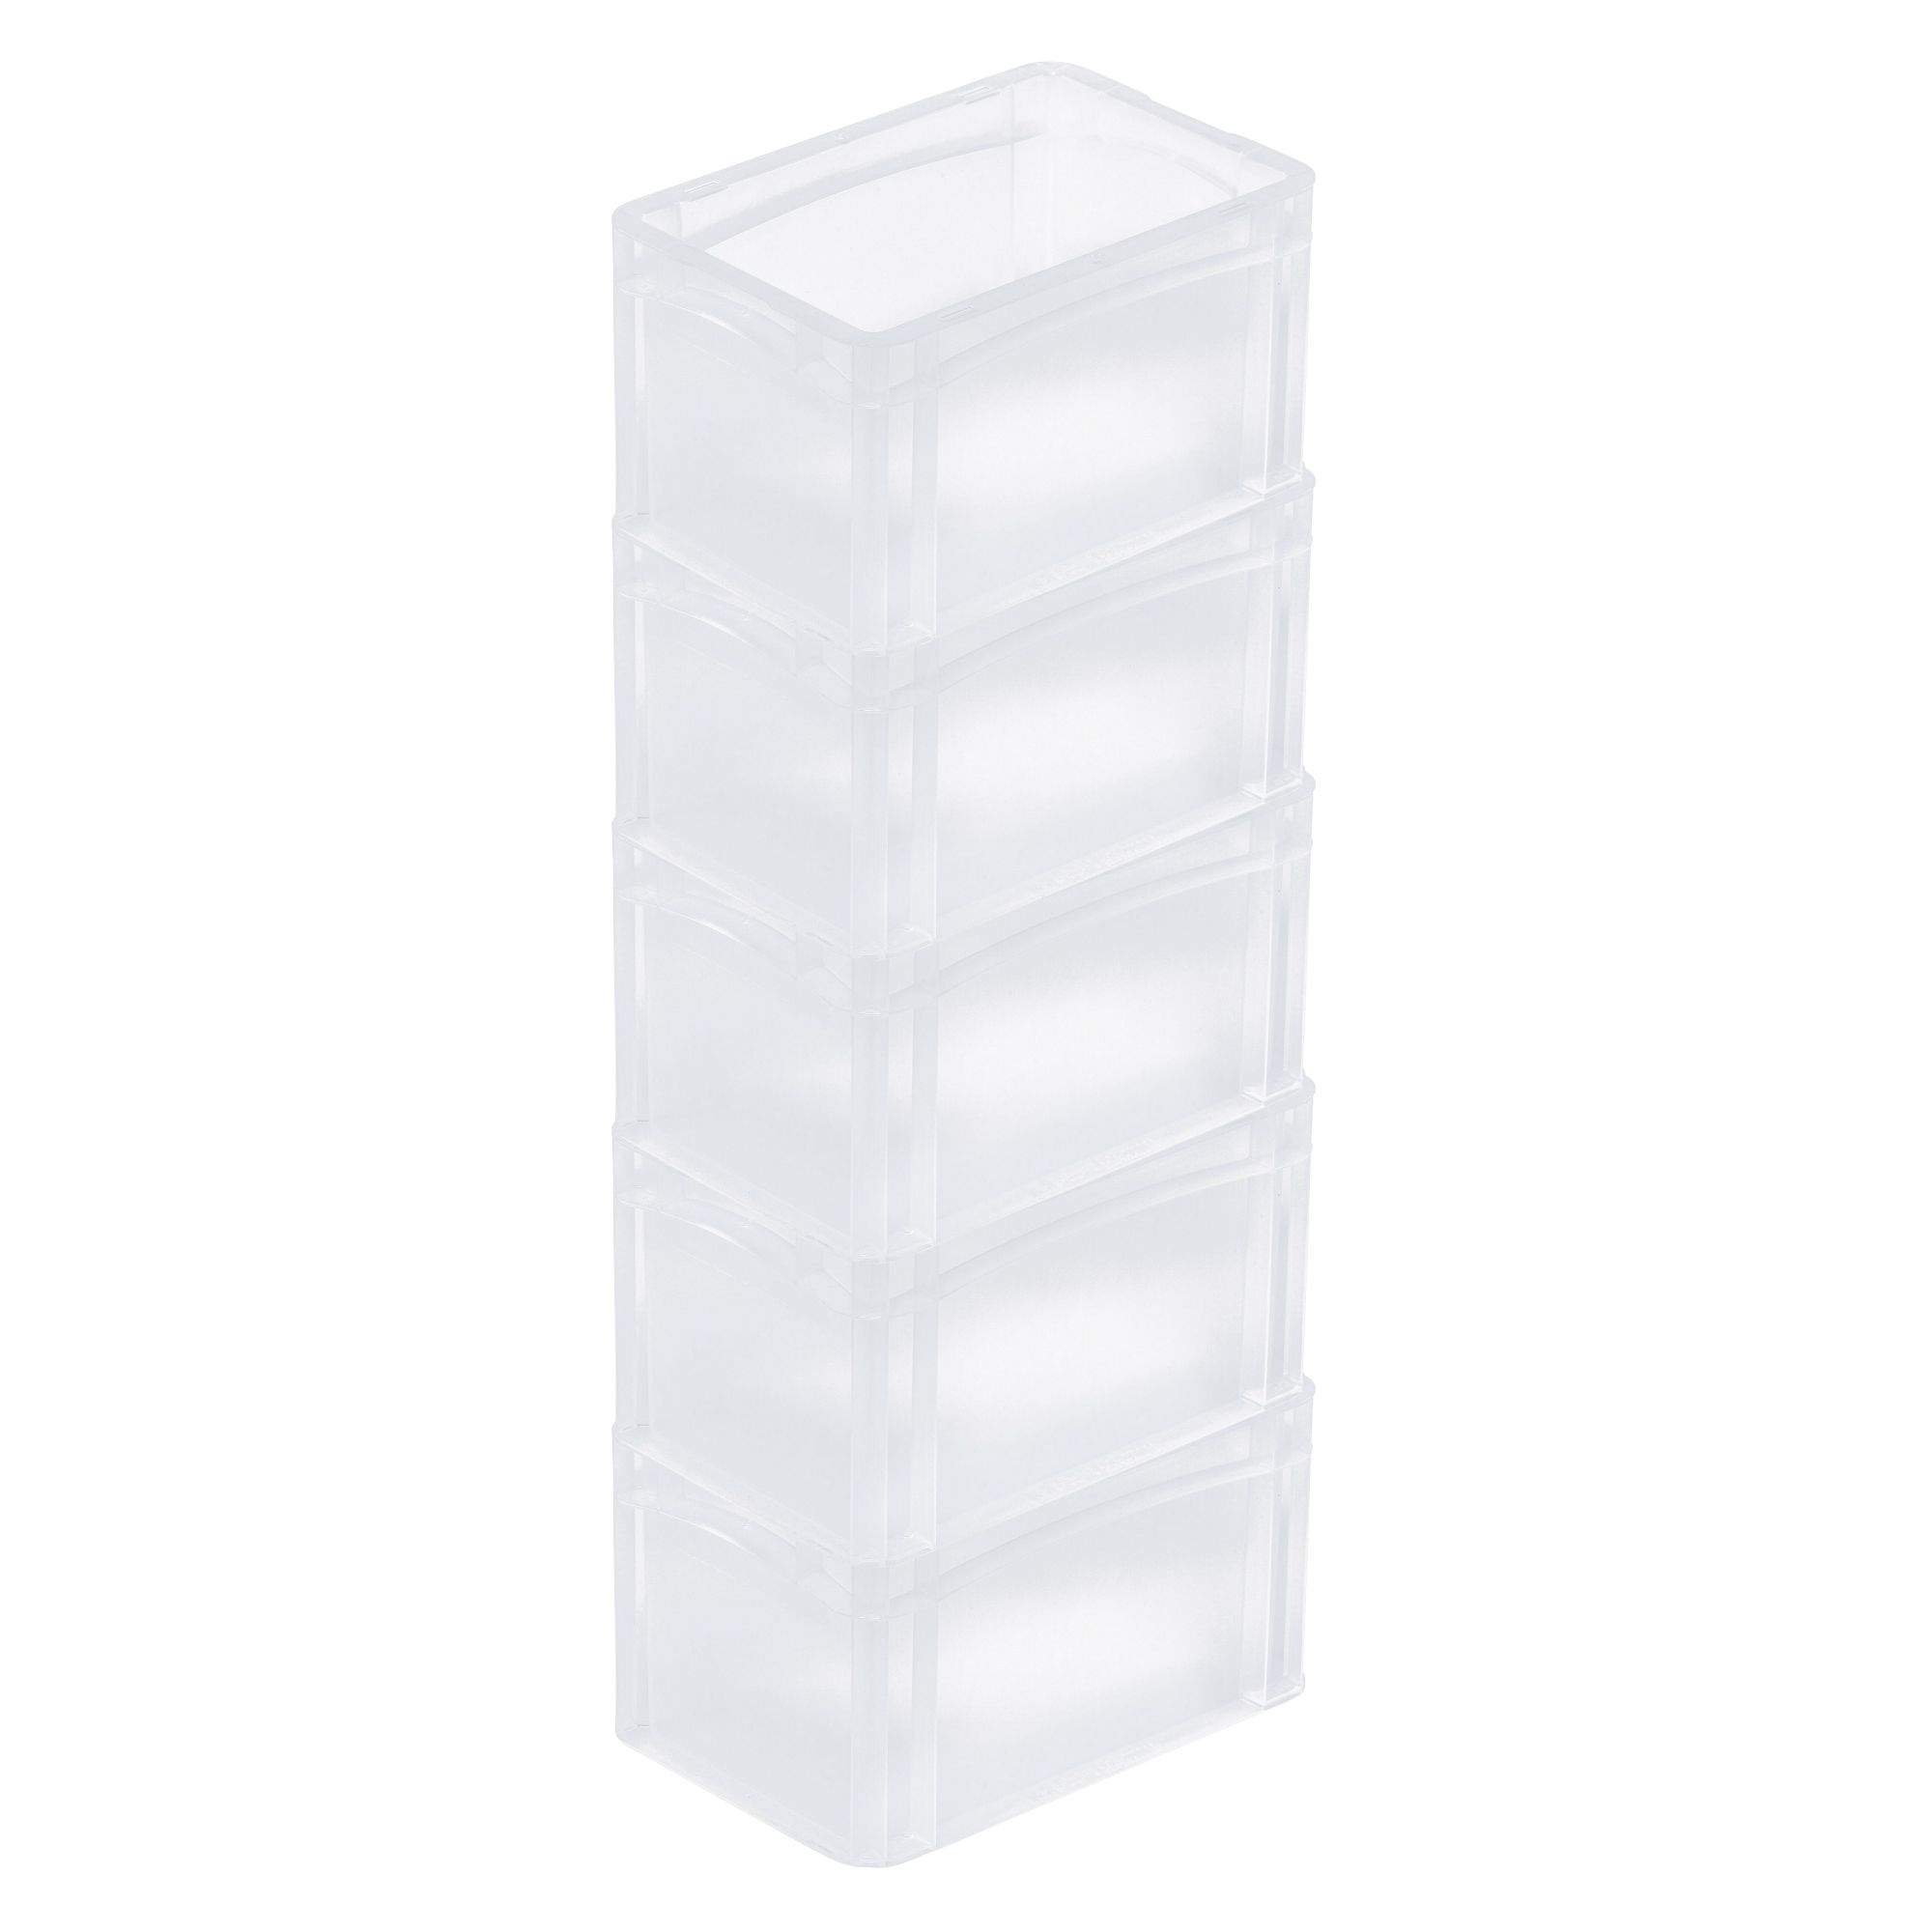 Transparenter Eurobehälter BasicLine mit geschlossenem Griff | HxBxT 17x20x30cm | 7,2 Liter | Eurobox, Transportbox, Transportbehälter, Stapelbehälter